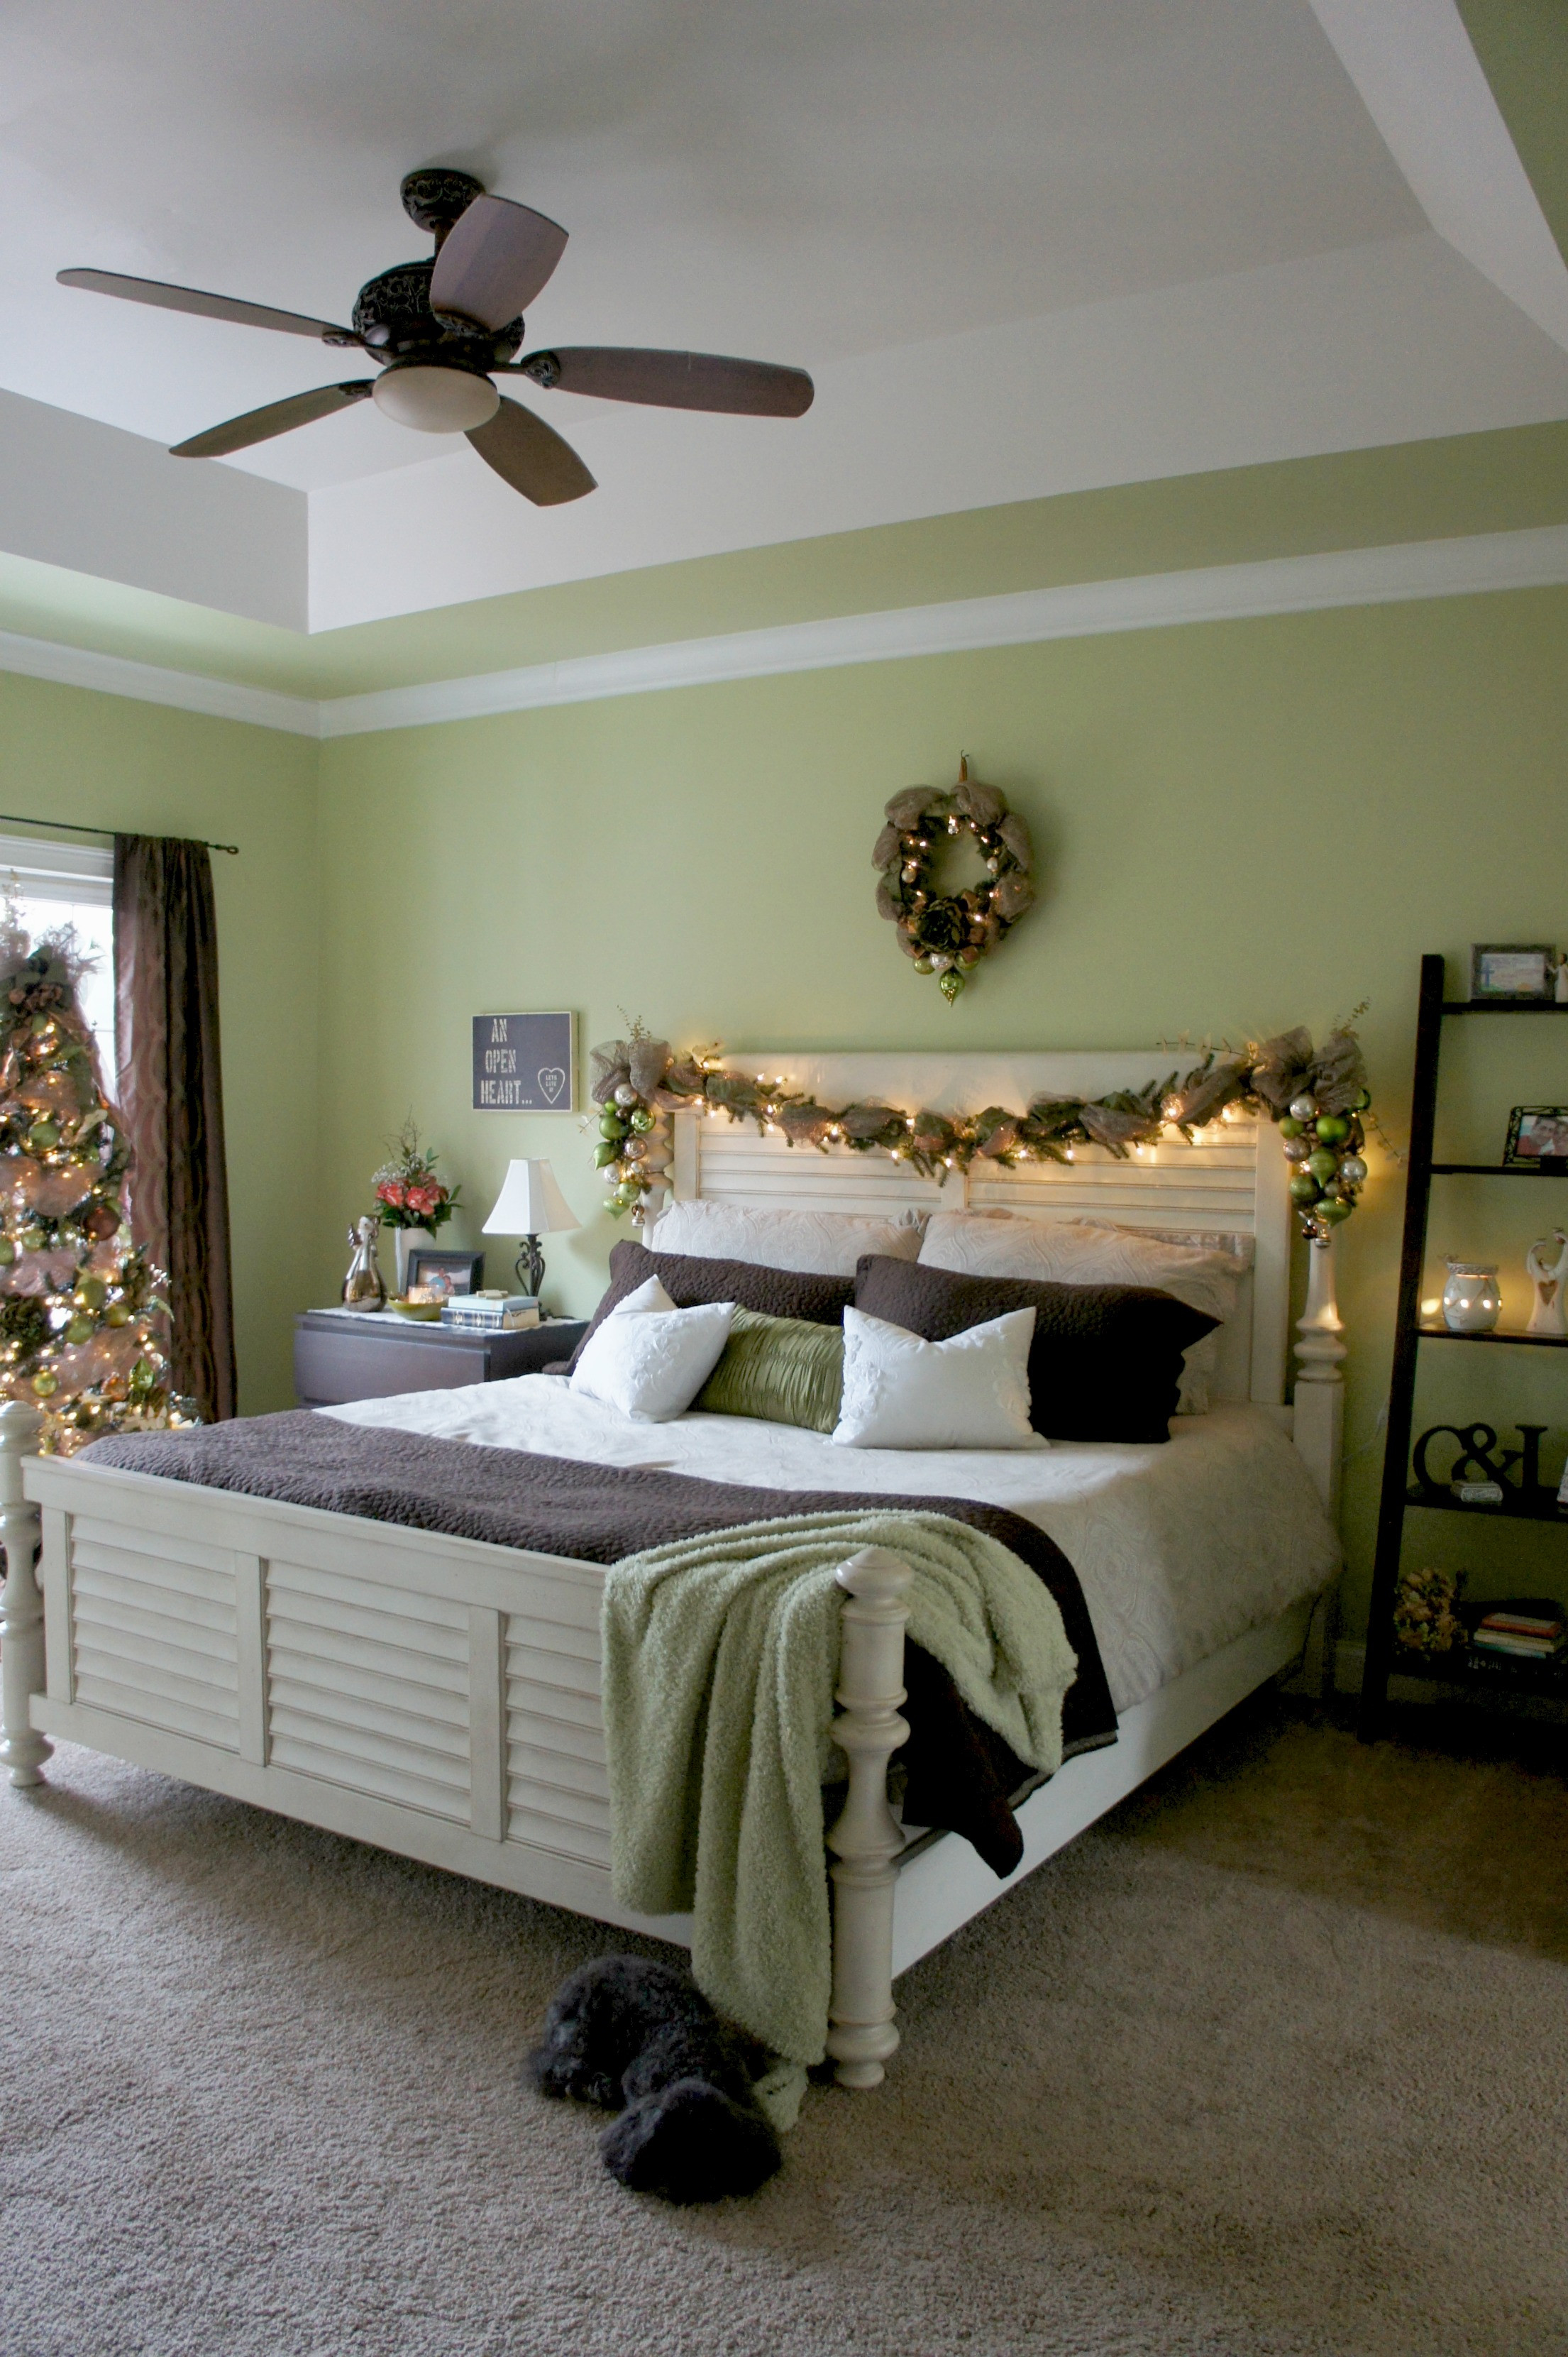 Christmas Bedroom Decor
 A Christmas Bedroom